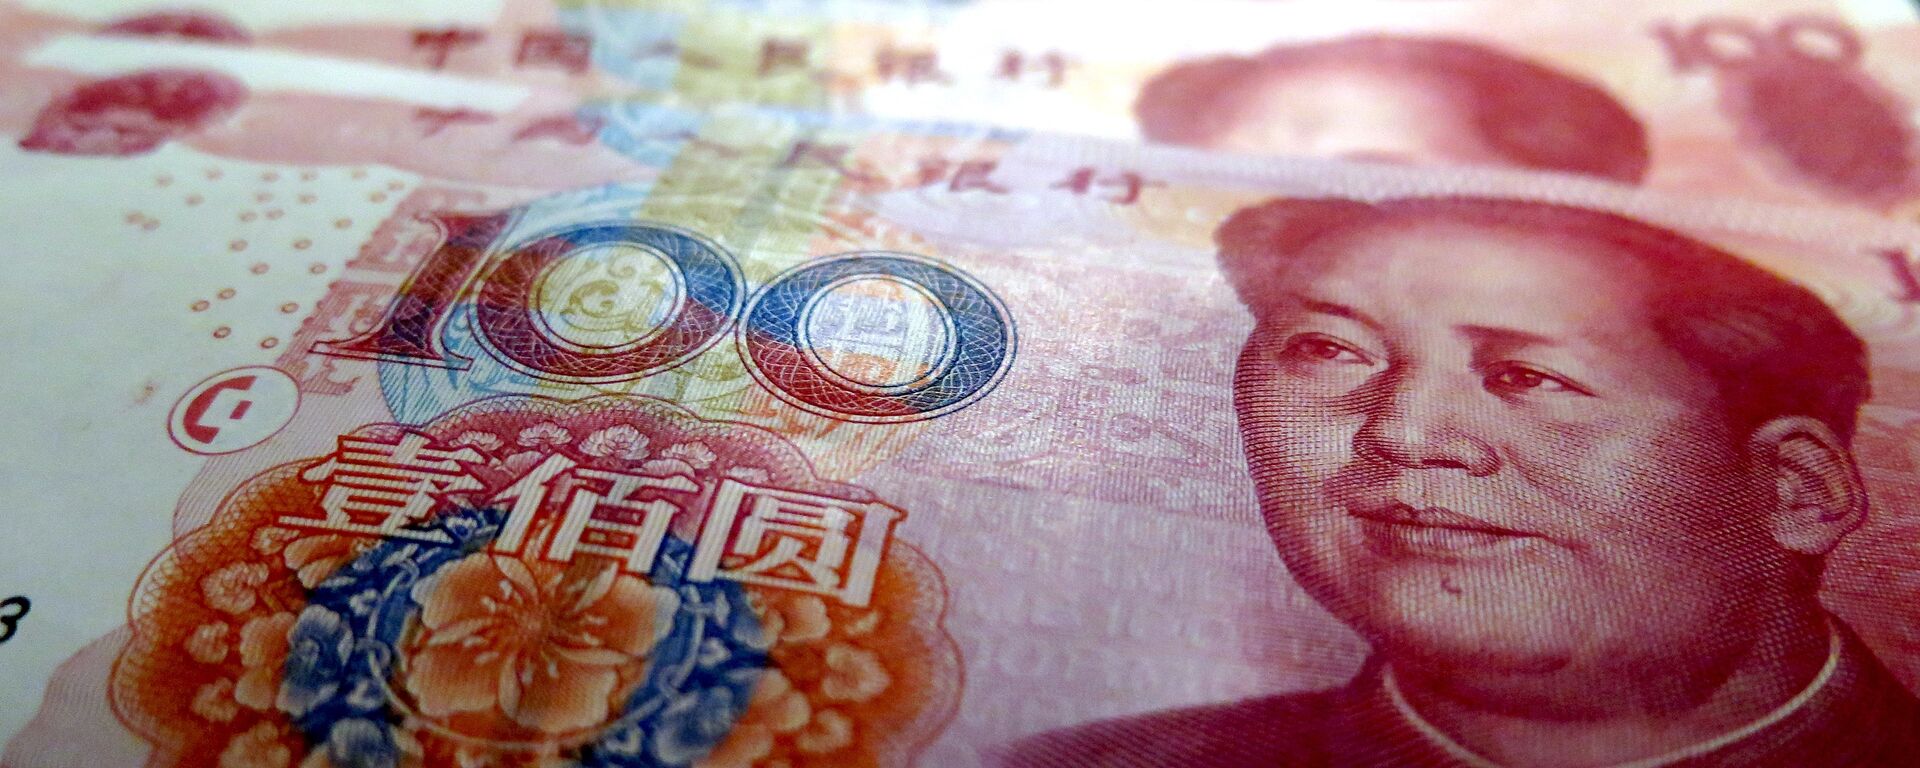 Yuan, moneda china - Sputnik Mundo, 1920, 25.05.2021